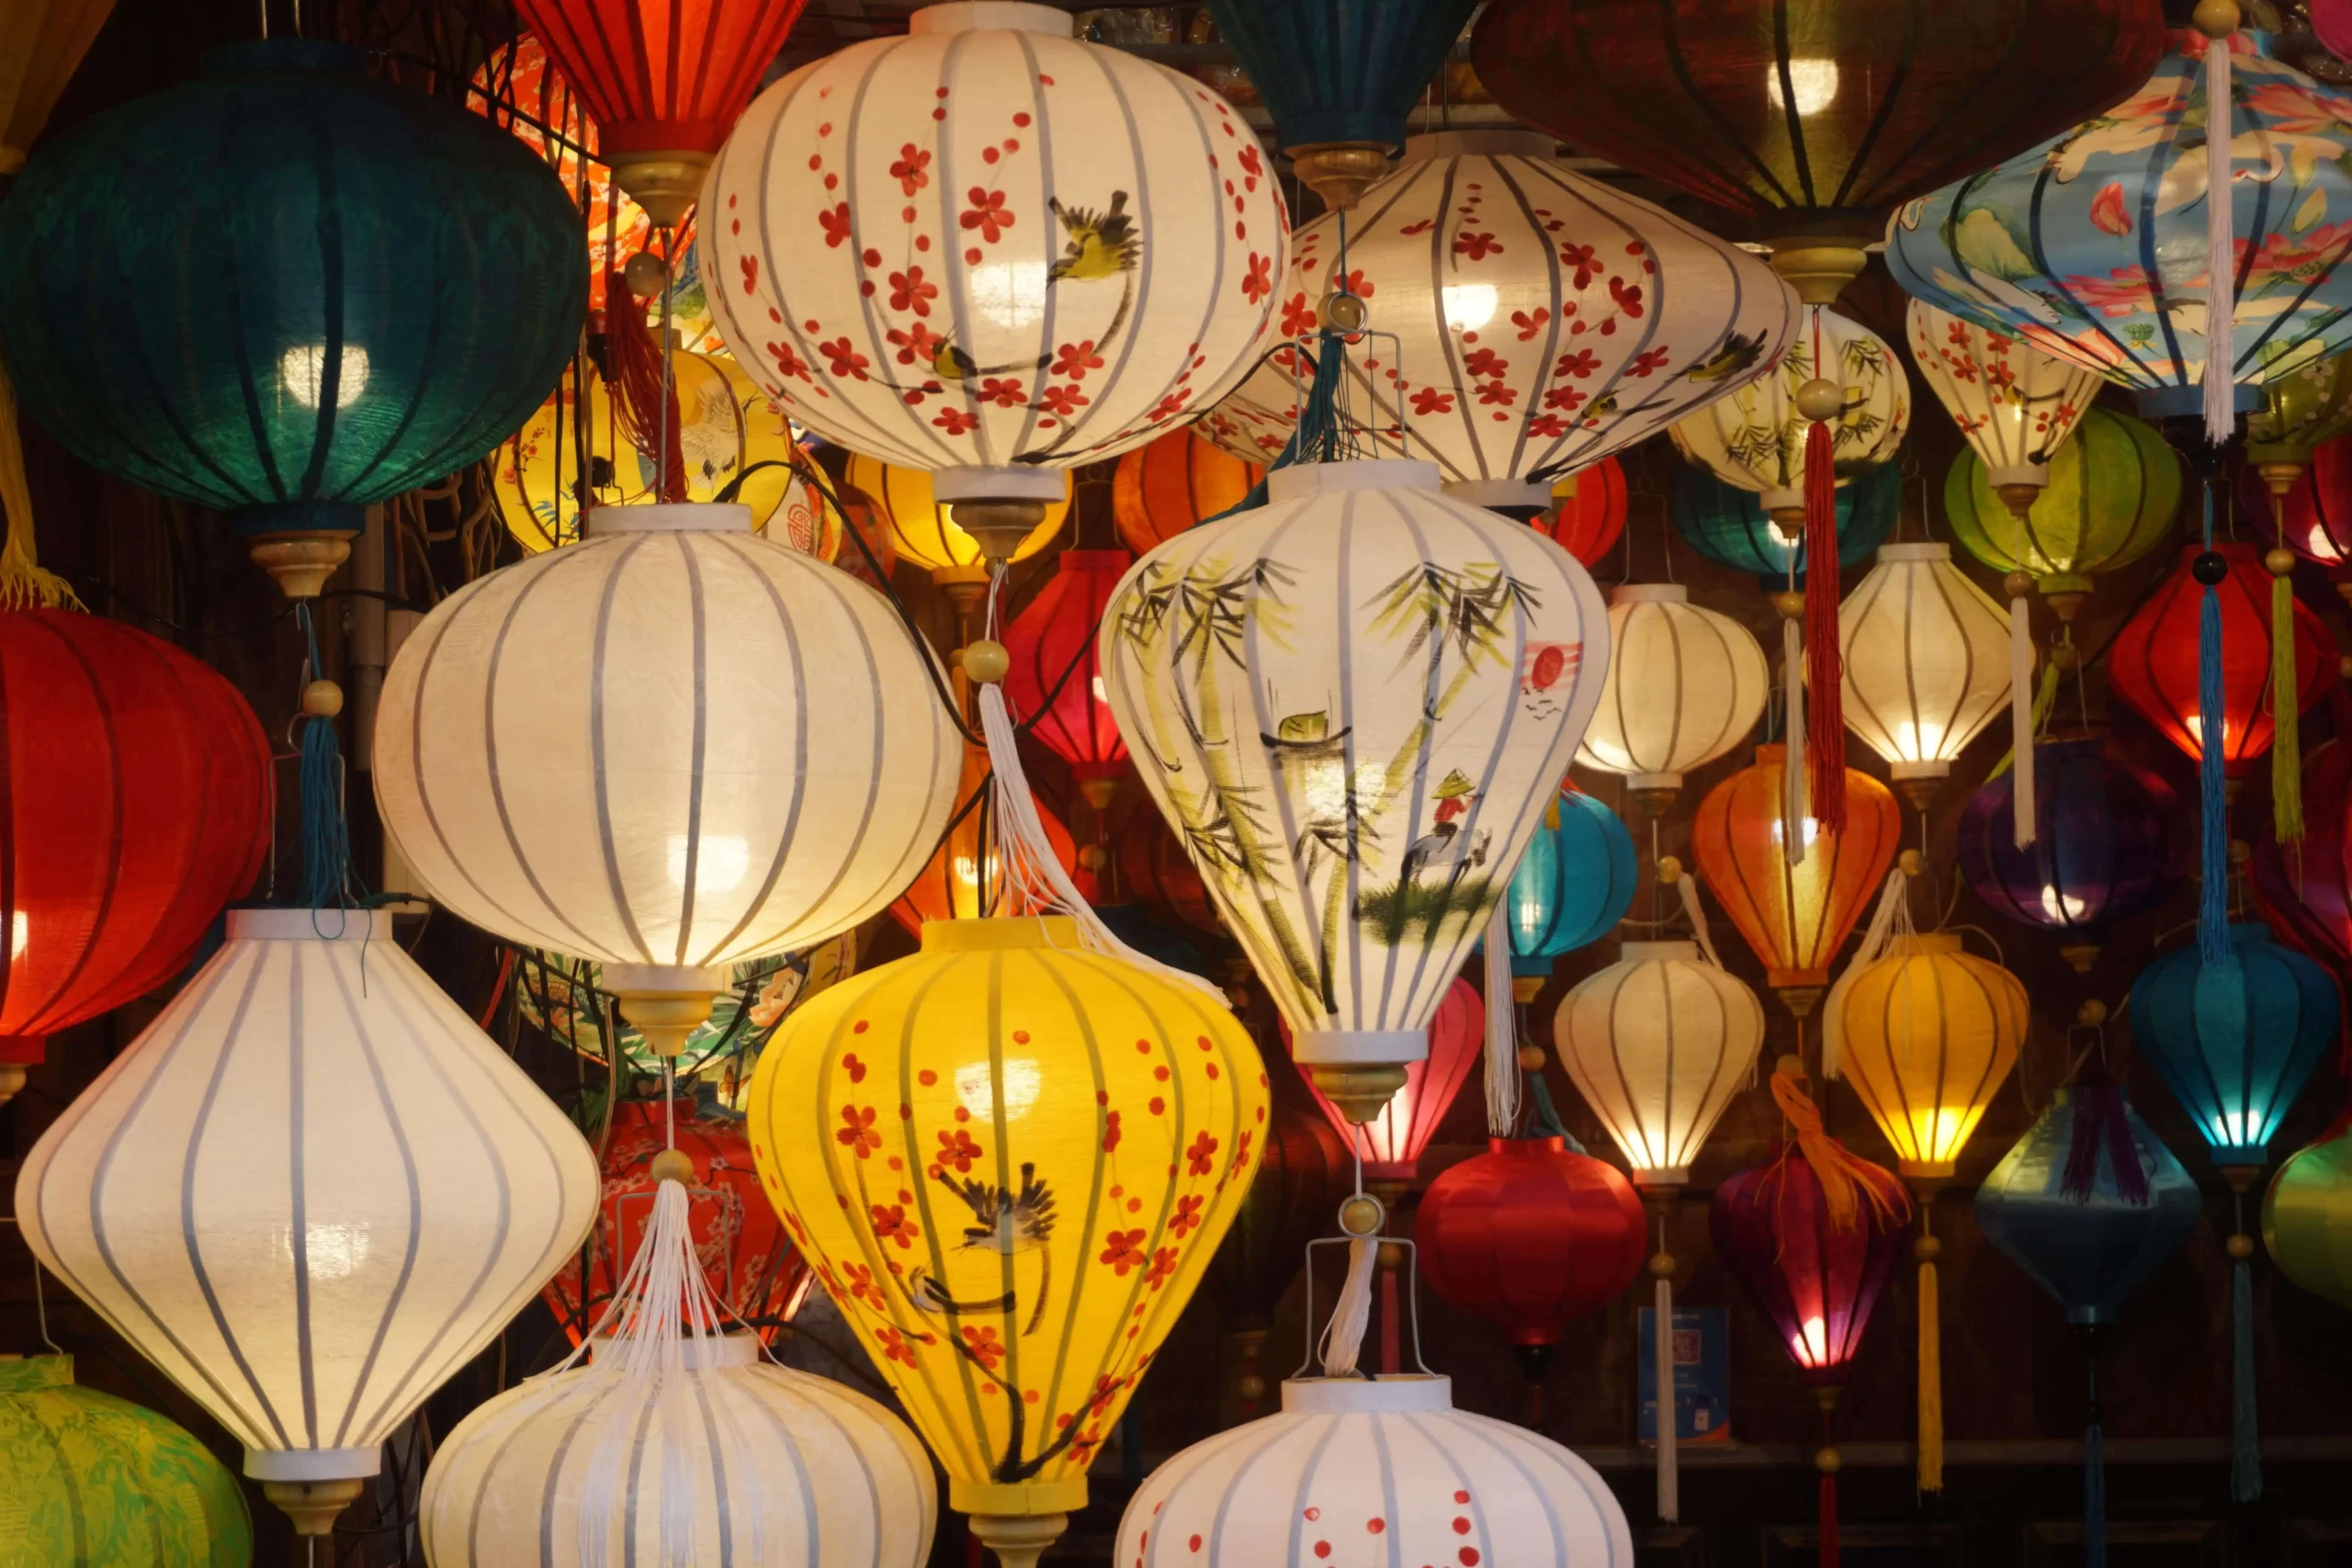 Biying the lanterns in Hoi An